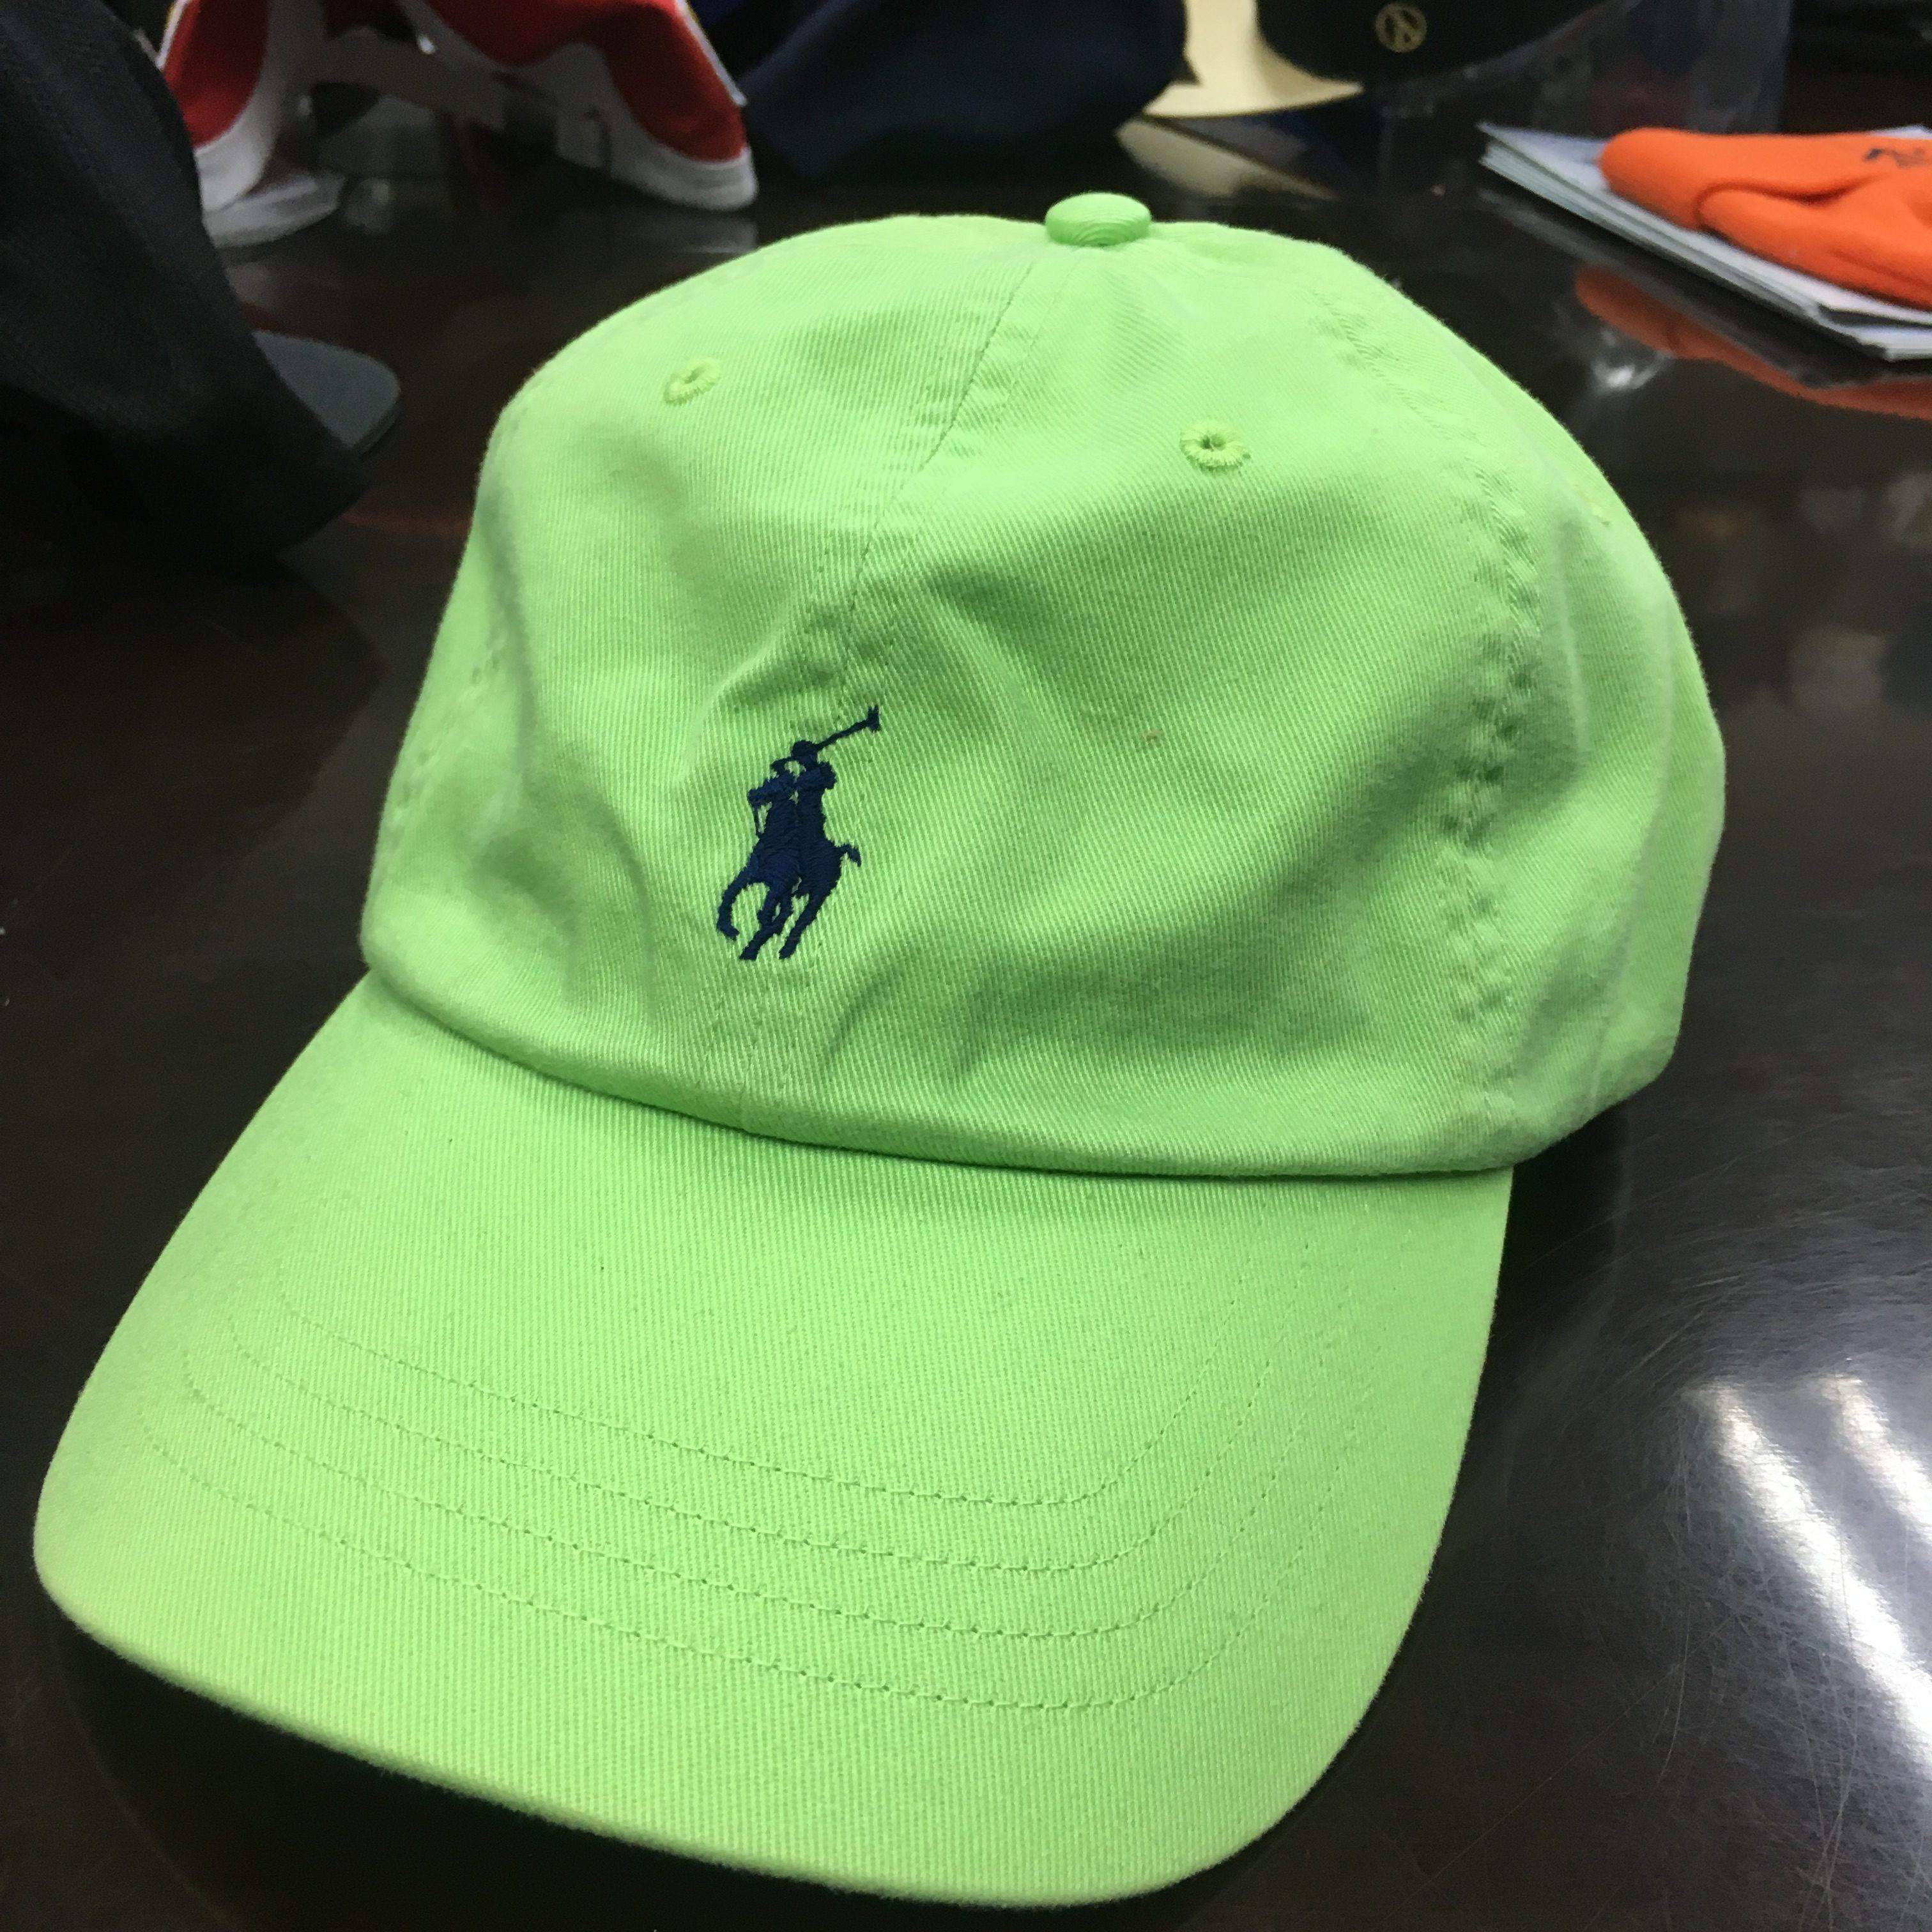 custom dad hats